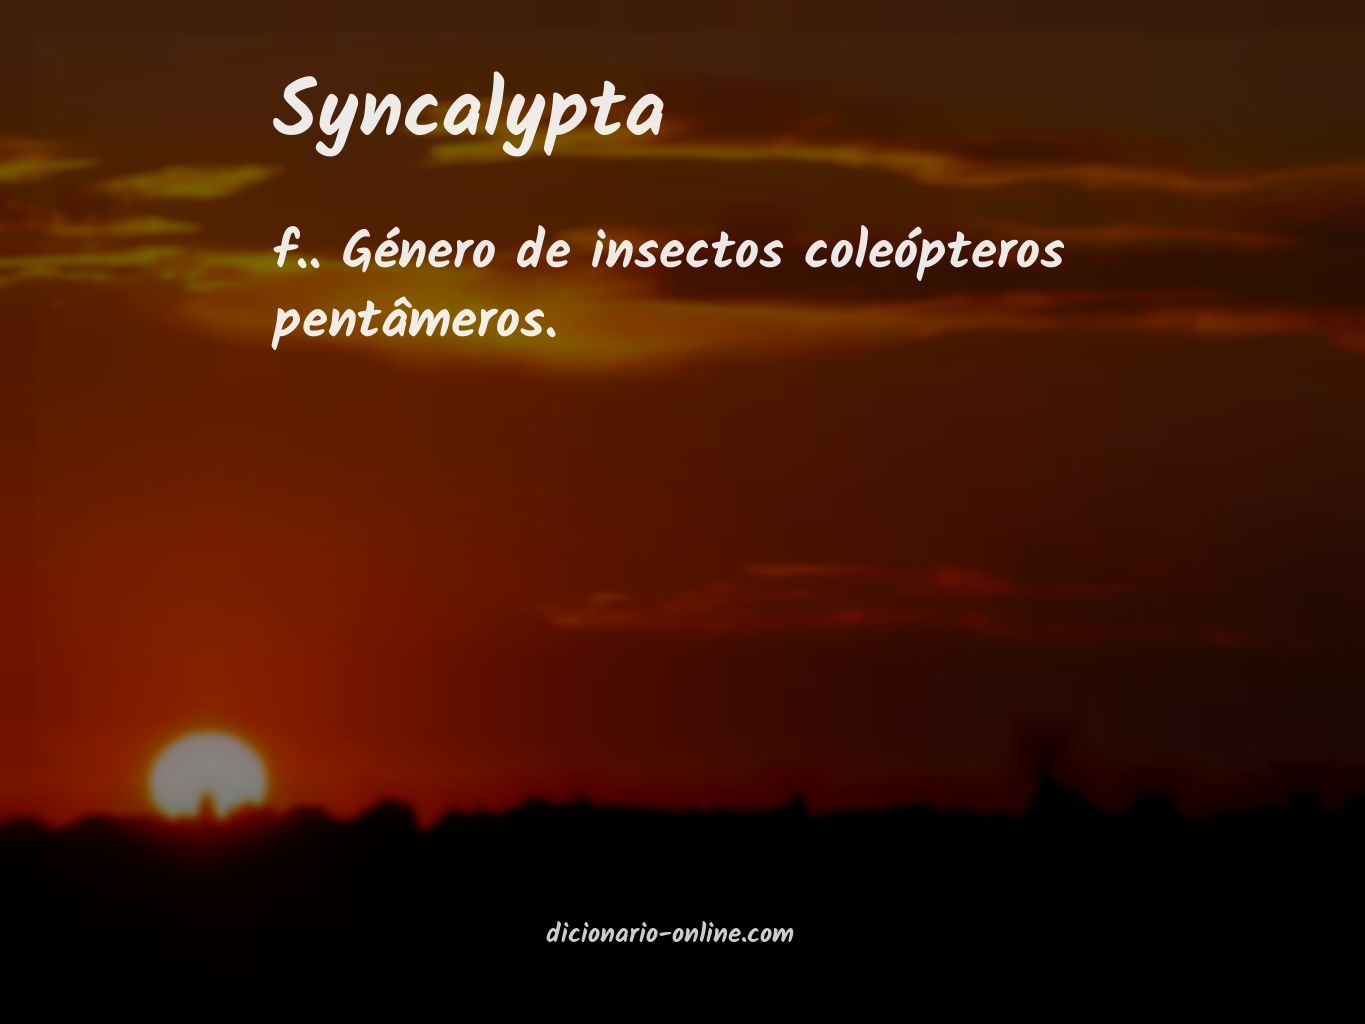 Significado de syncalypta